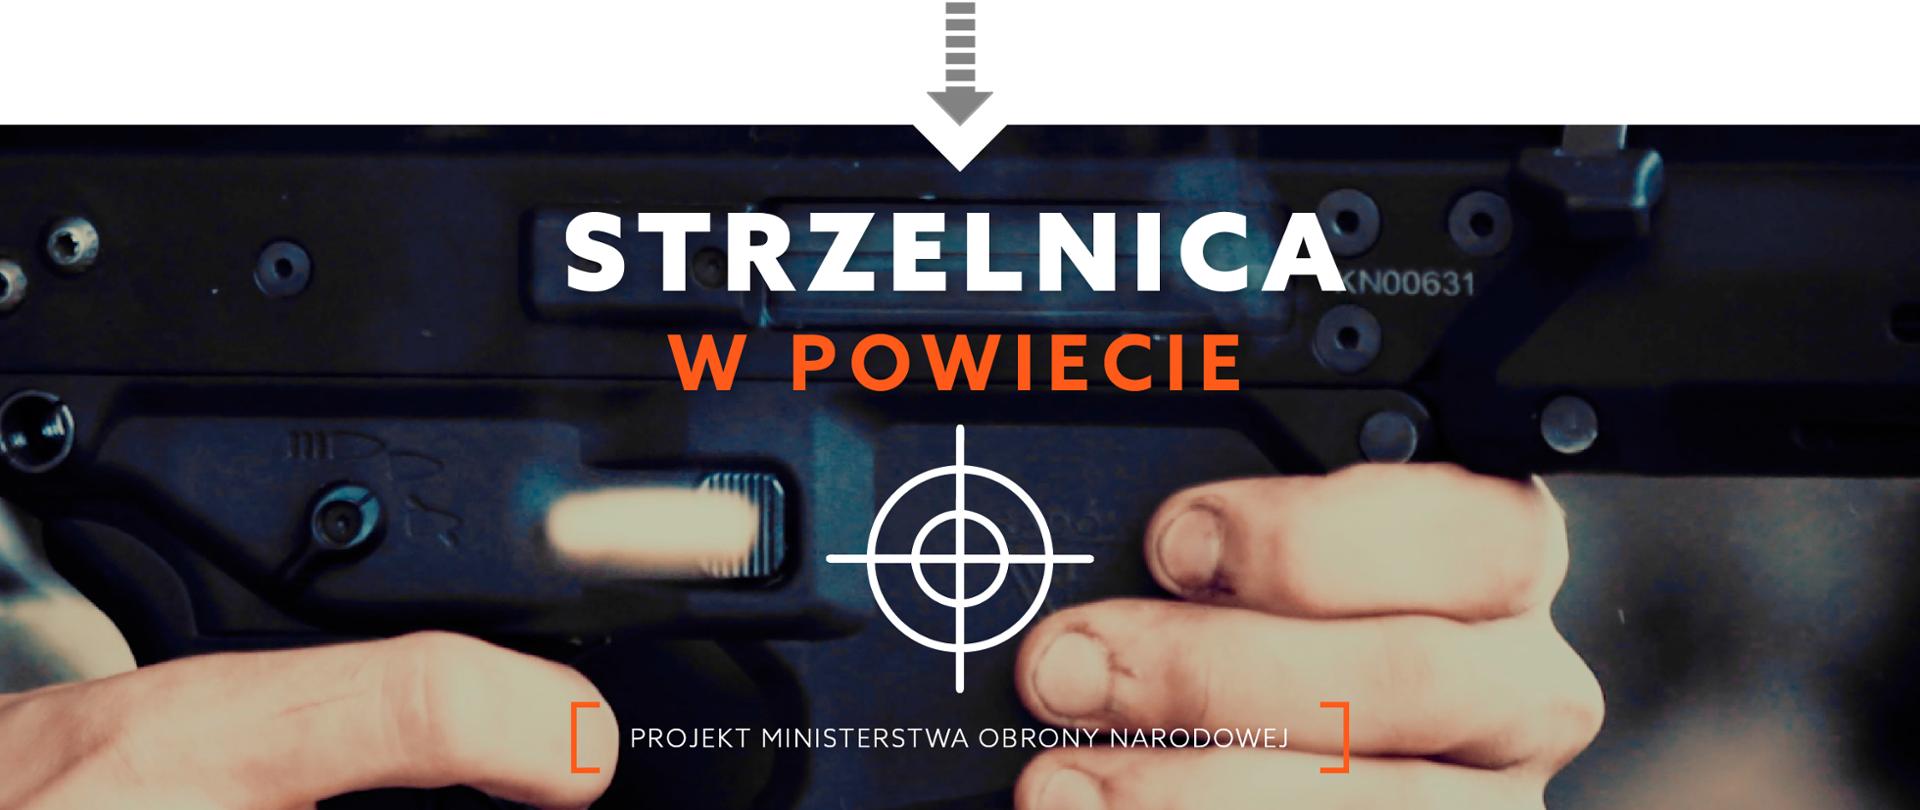 www_lead_strzelnica_w_powiecie_01a